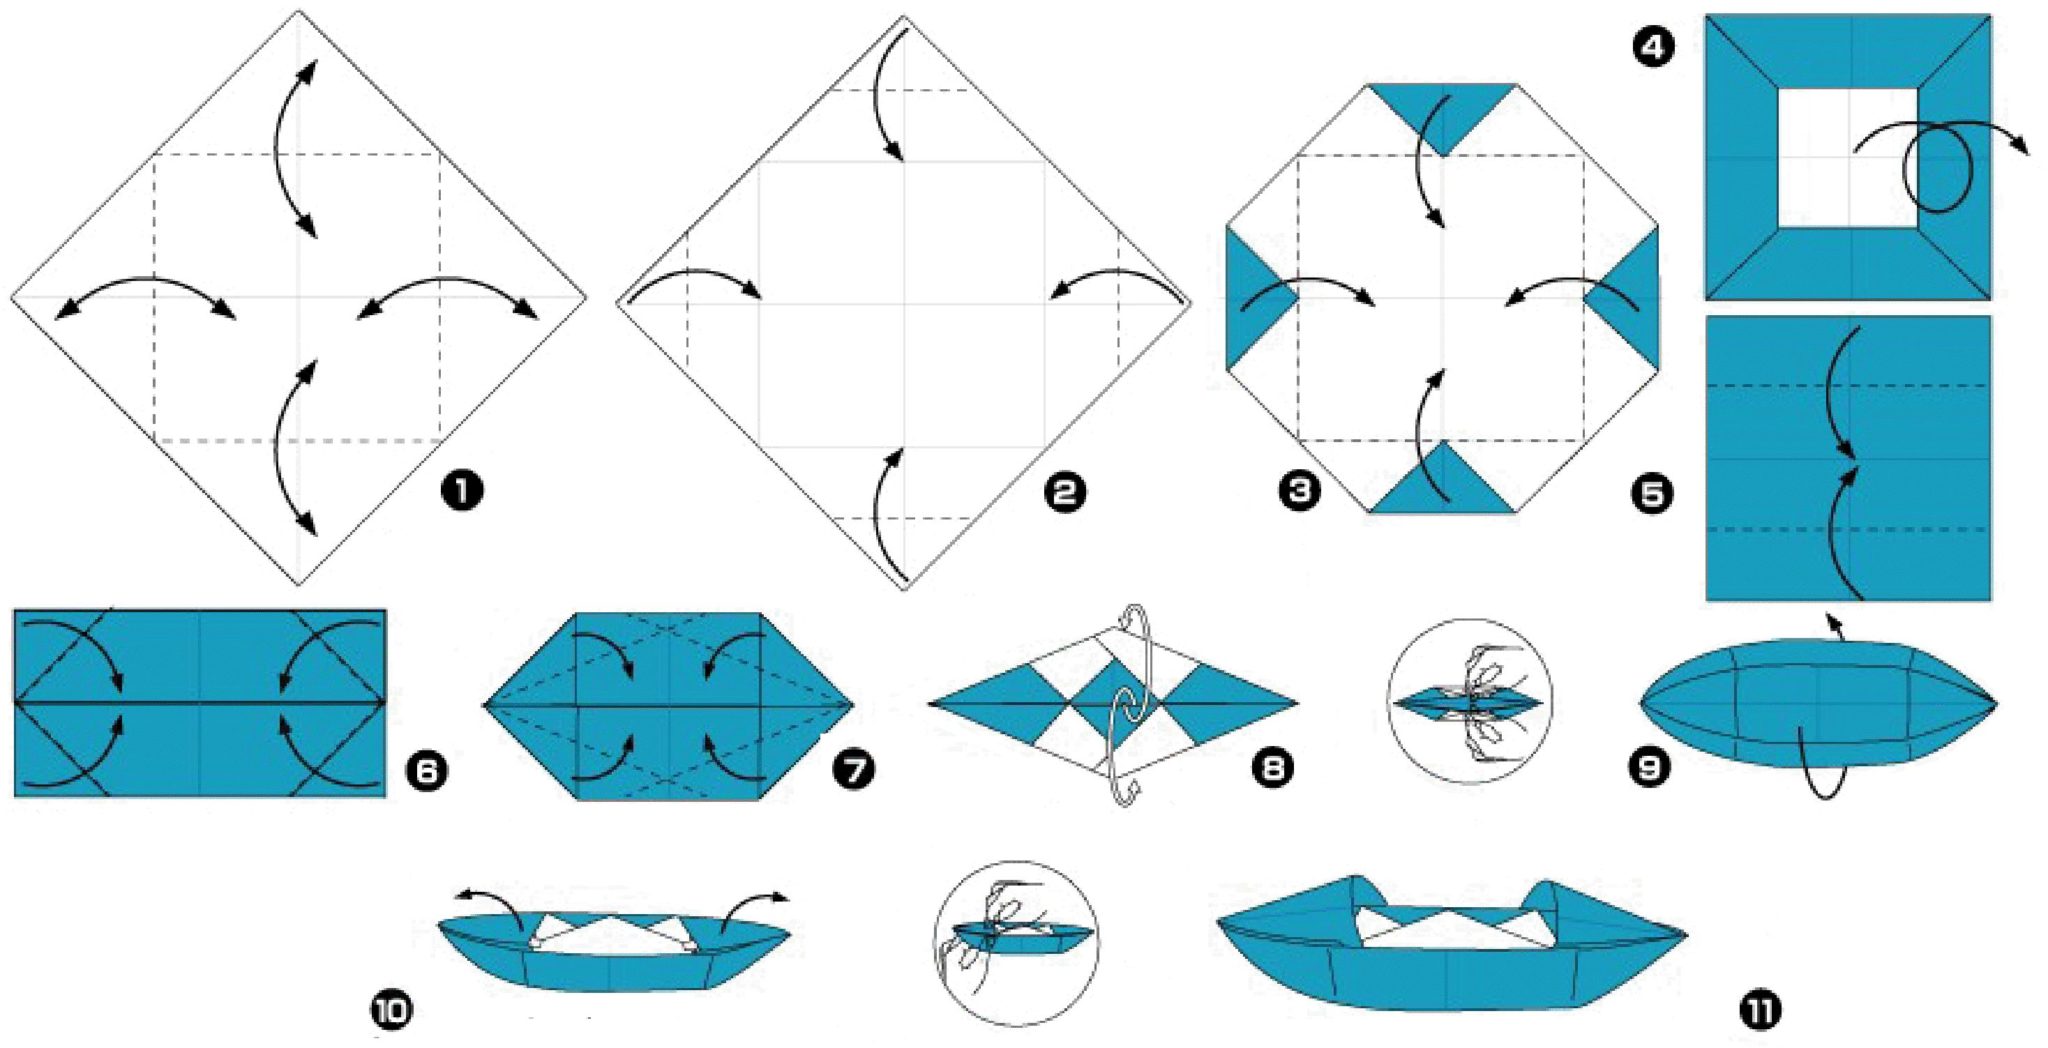 Схема кораблика оригами для детей. Кораблик оригами из бумаги для детей схема. Как сделать оригами кораблик из бумаги а4. Бумажный кораблик схема складывания пошагово из бумаги. Кораблик из бумаги схема а4.